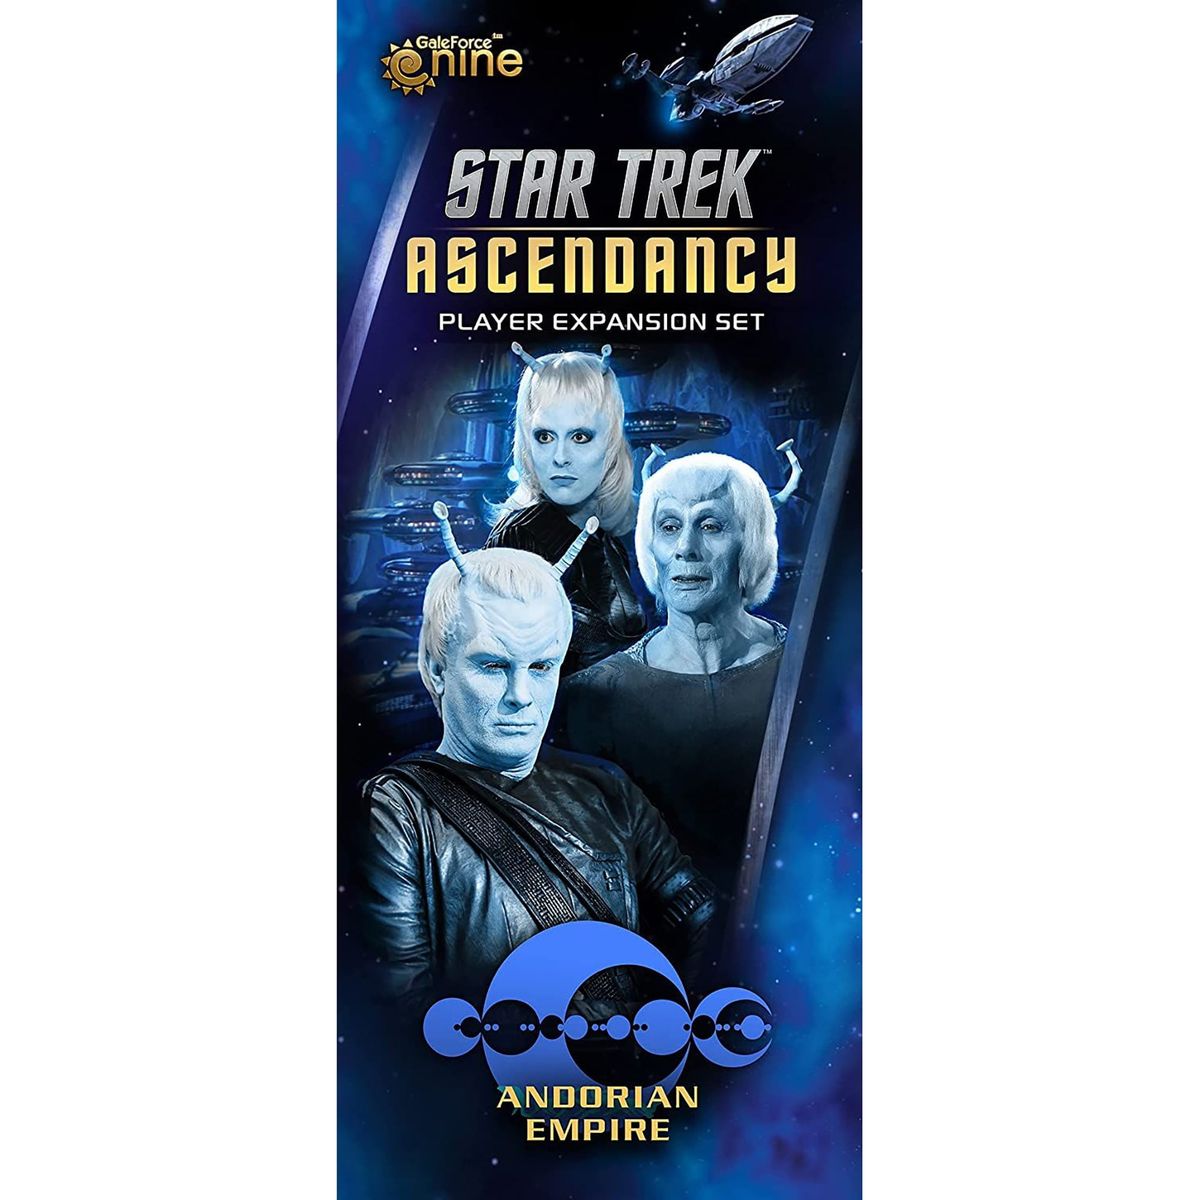 [送料無料] スタートレック アセンダンシーアンドリア拡張 - 対象年齢14才以上、1人以上、1時間 [楽天海外通販] | Star Trek Ascendancy: Andorian Expansion - Ages 14+, 1+ Players, 1 Hour画像